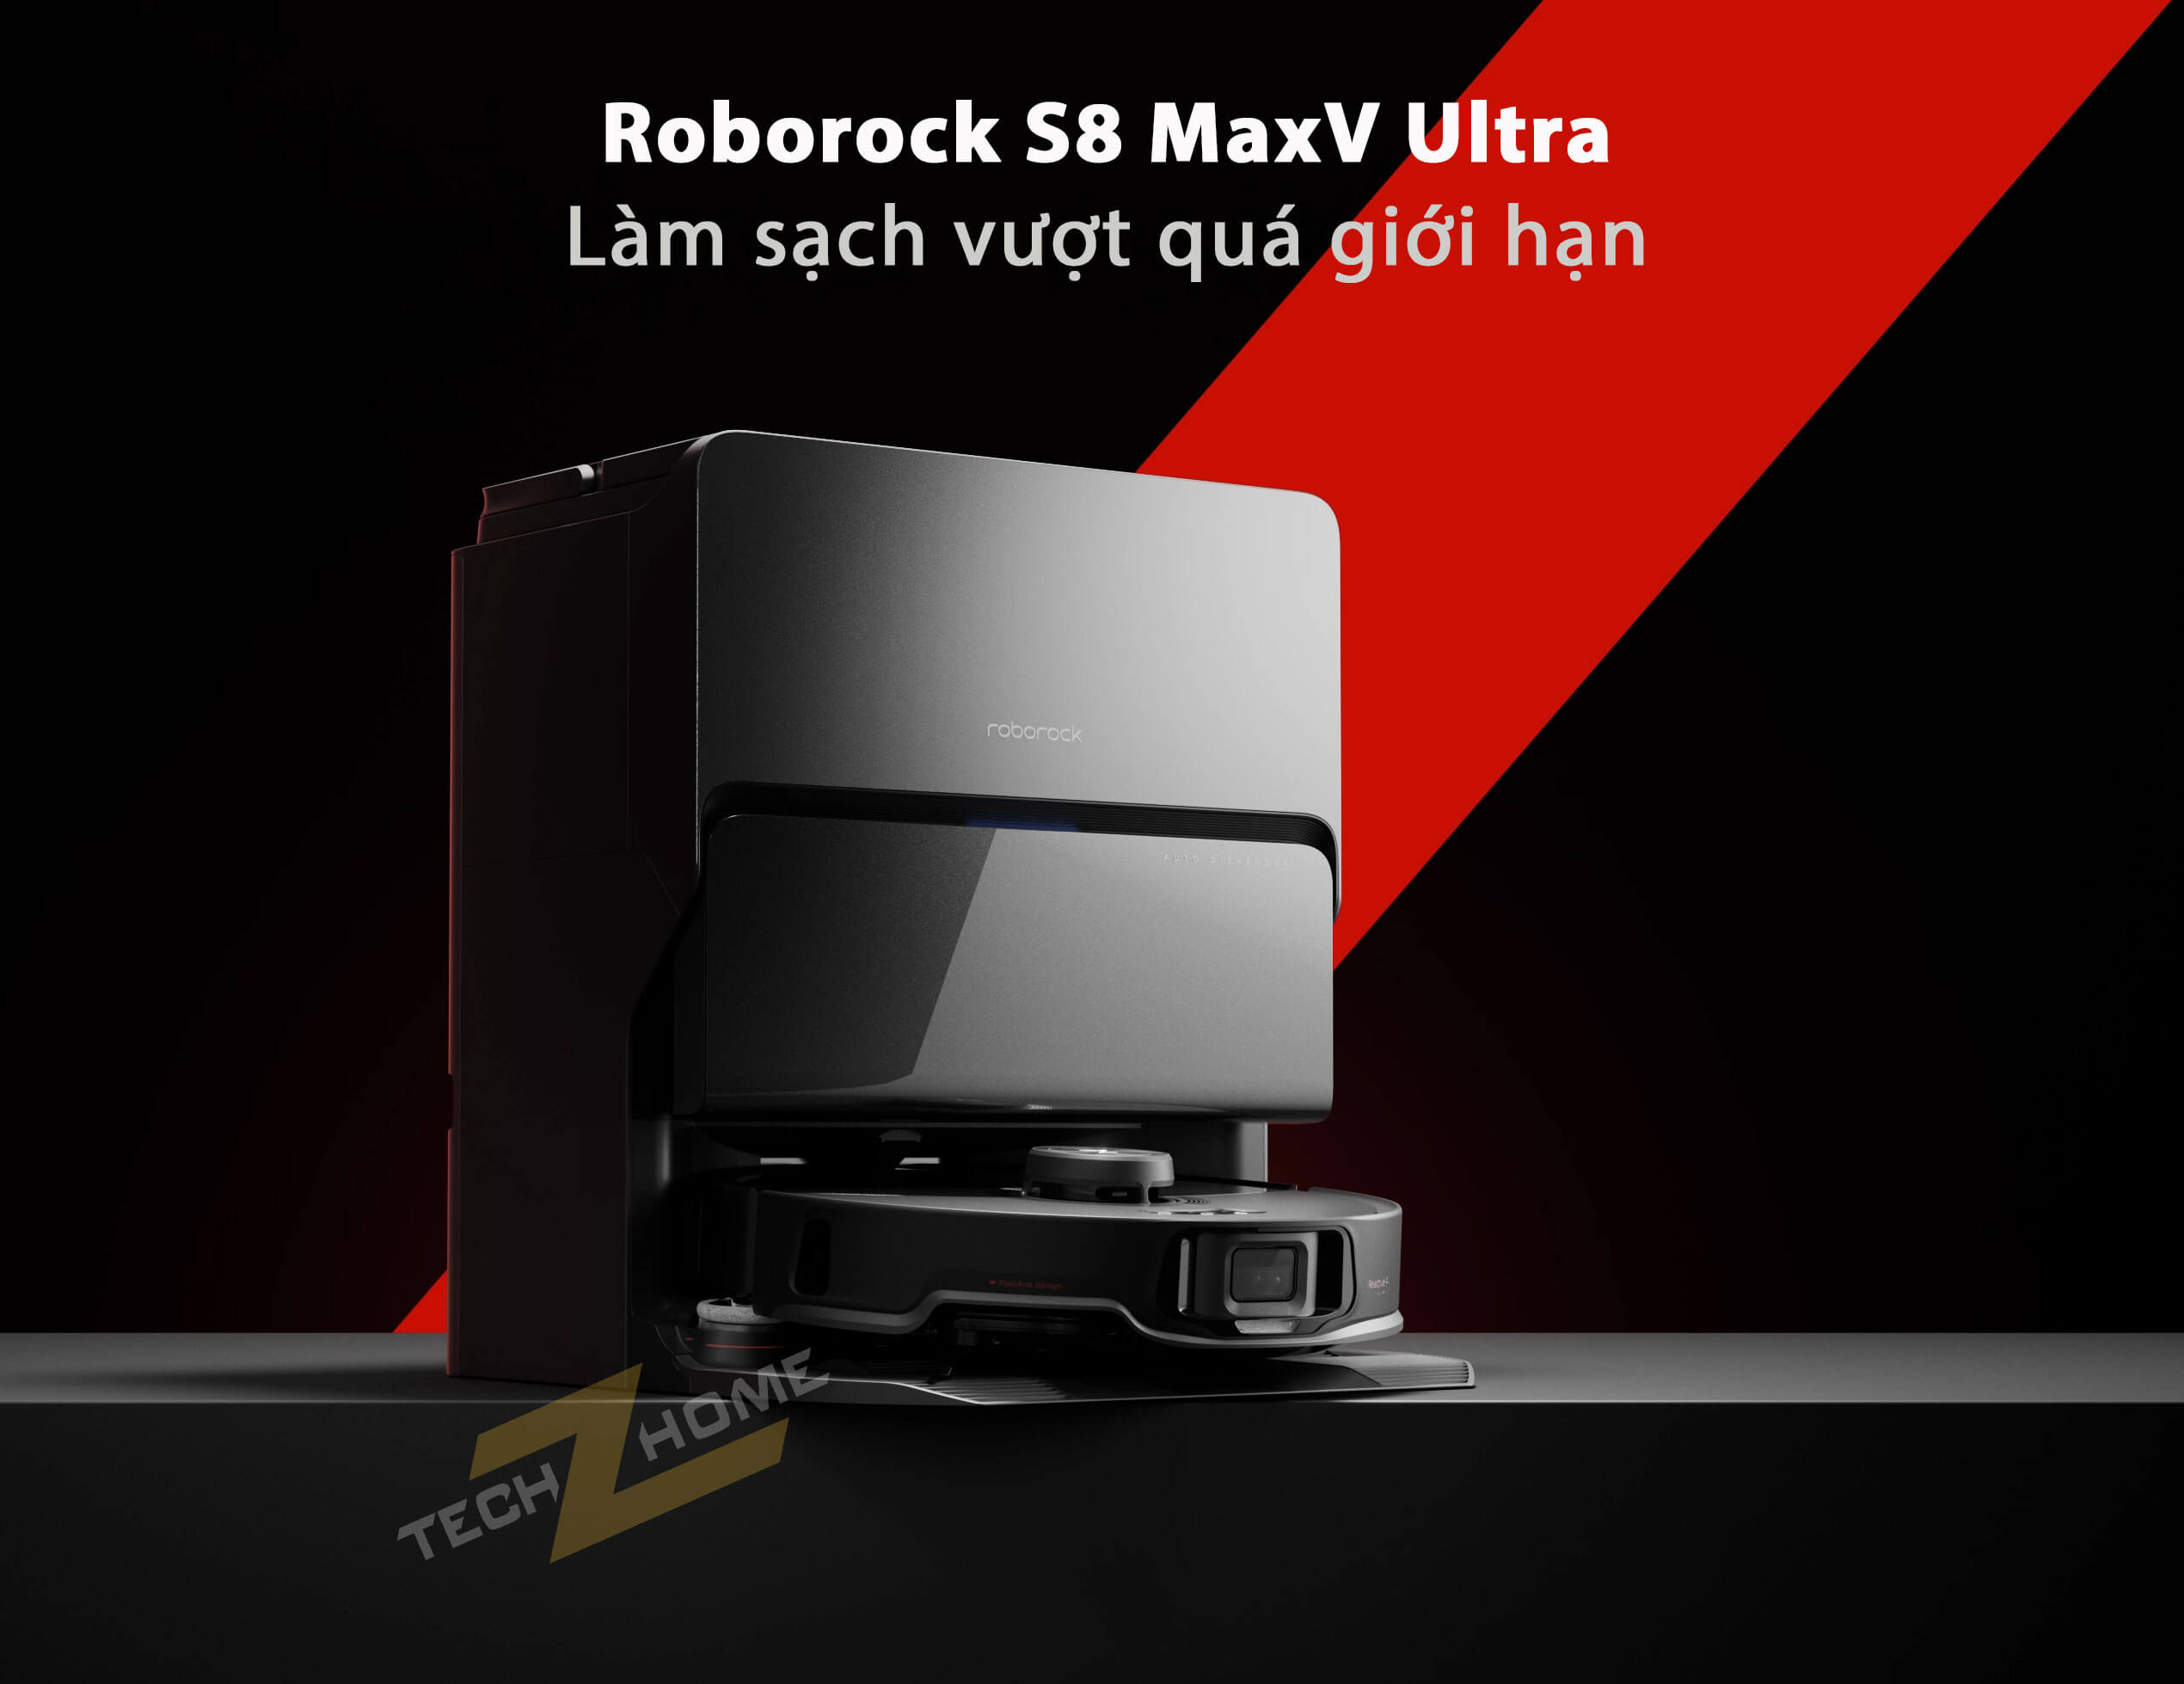 Roborock S8 MaxV Ultra - Làm sạch vượt giới hạn